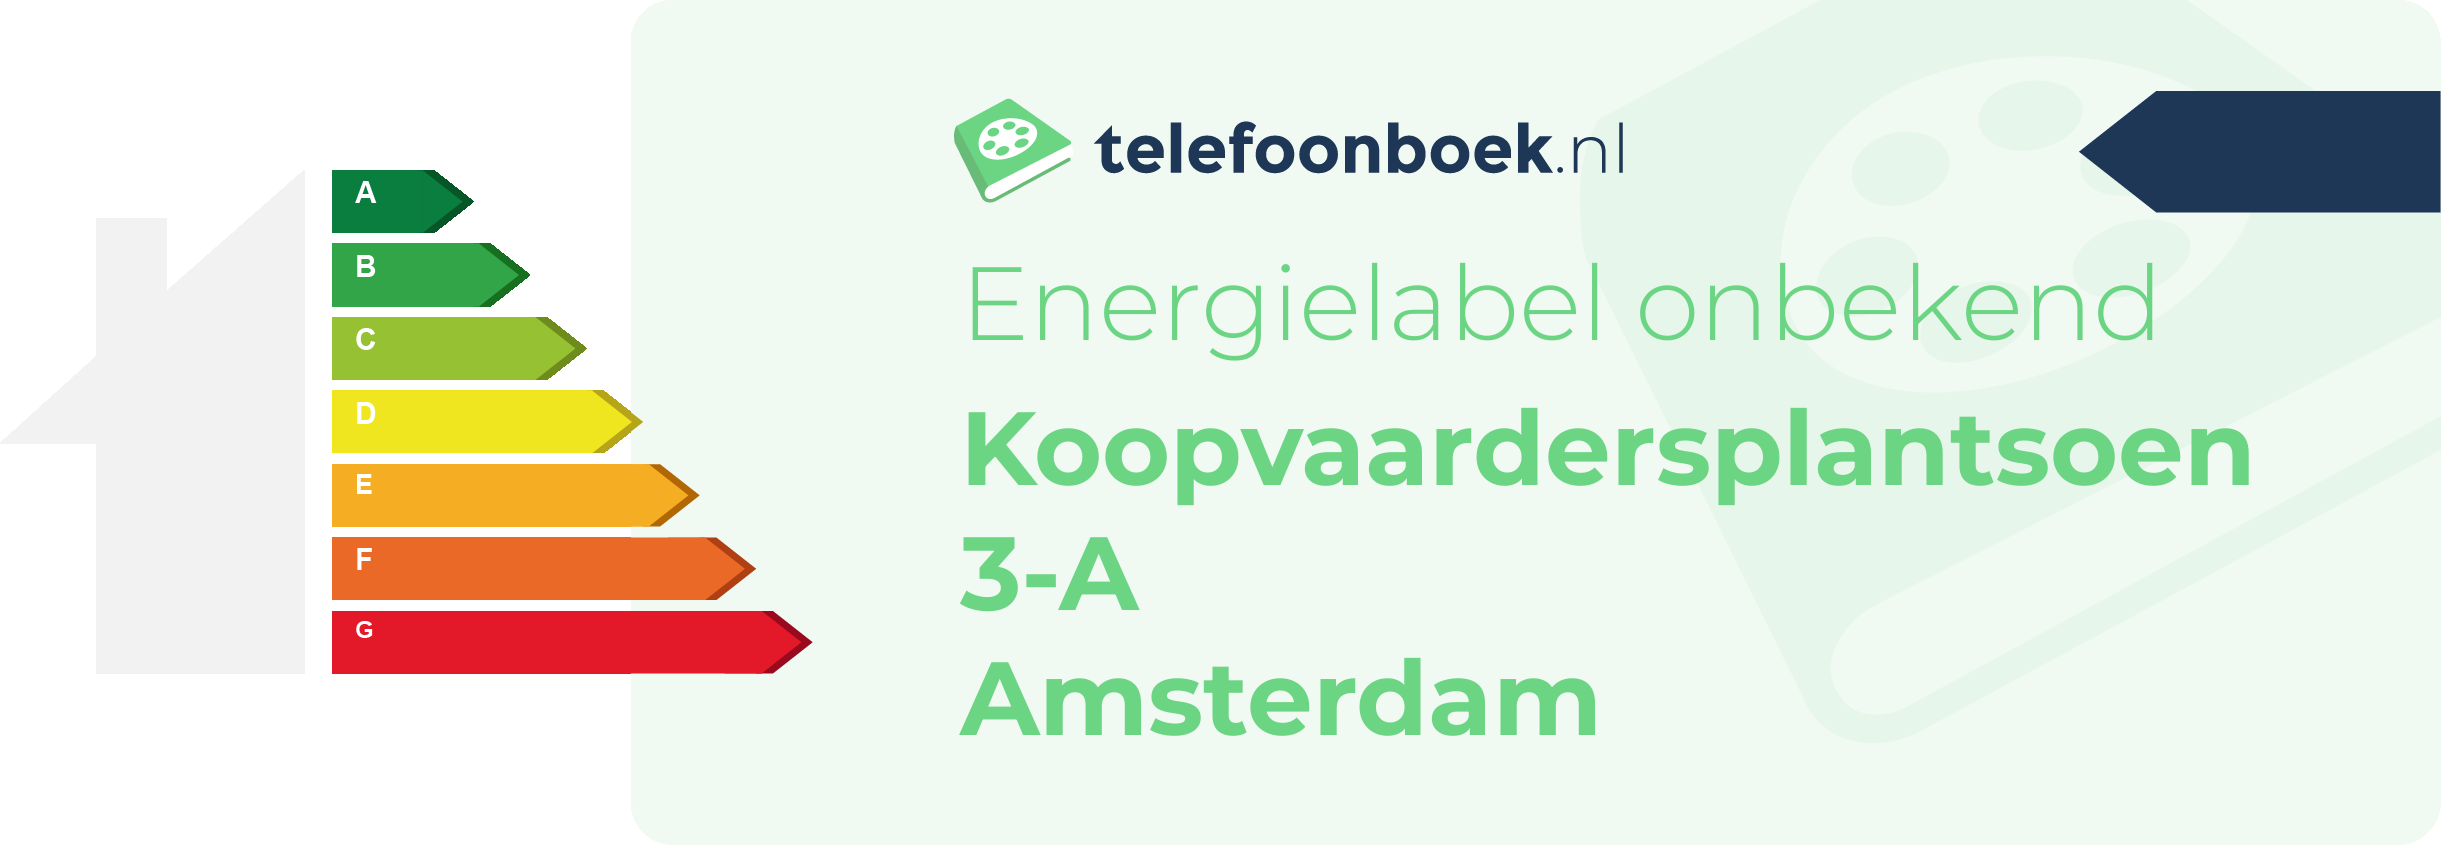 Energielabel Koopvaardersplantsoen 3-A Amsterdam